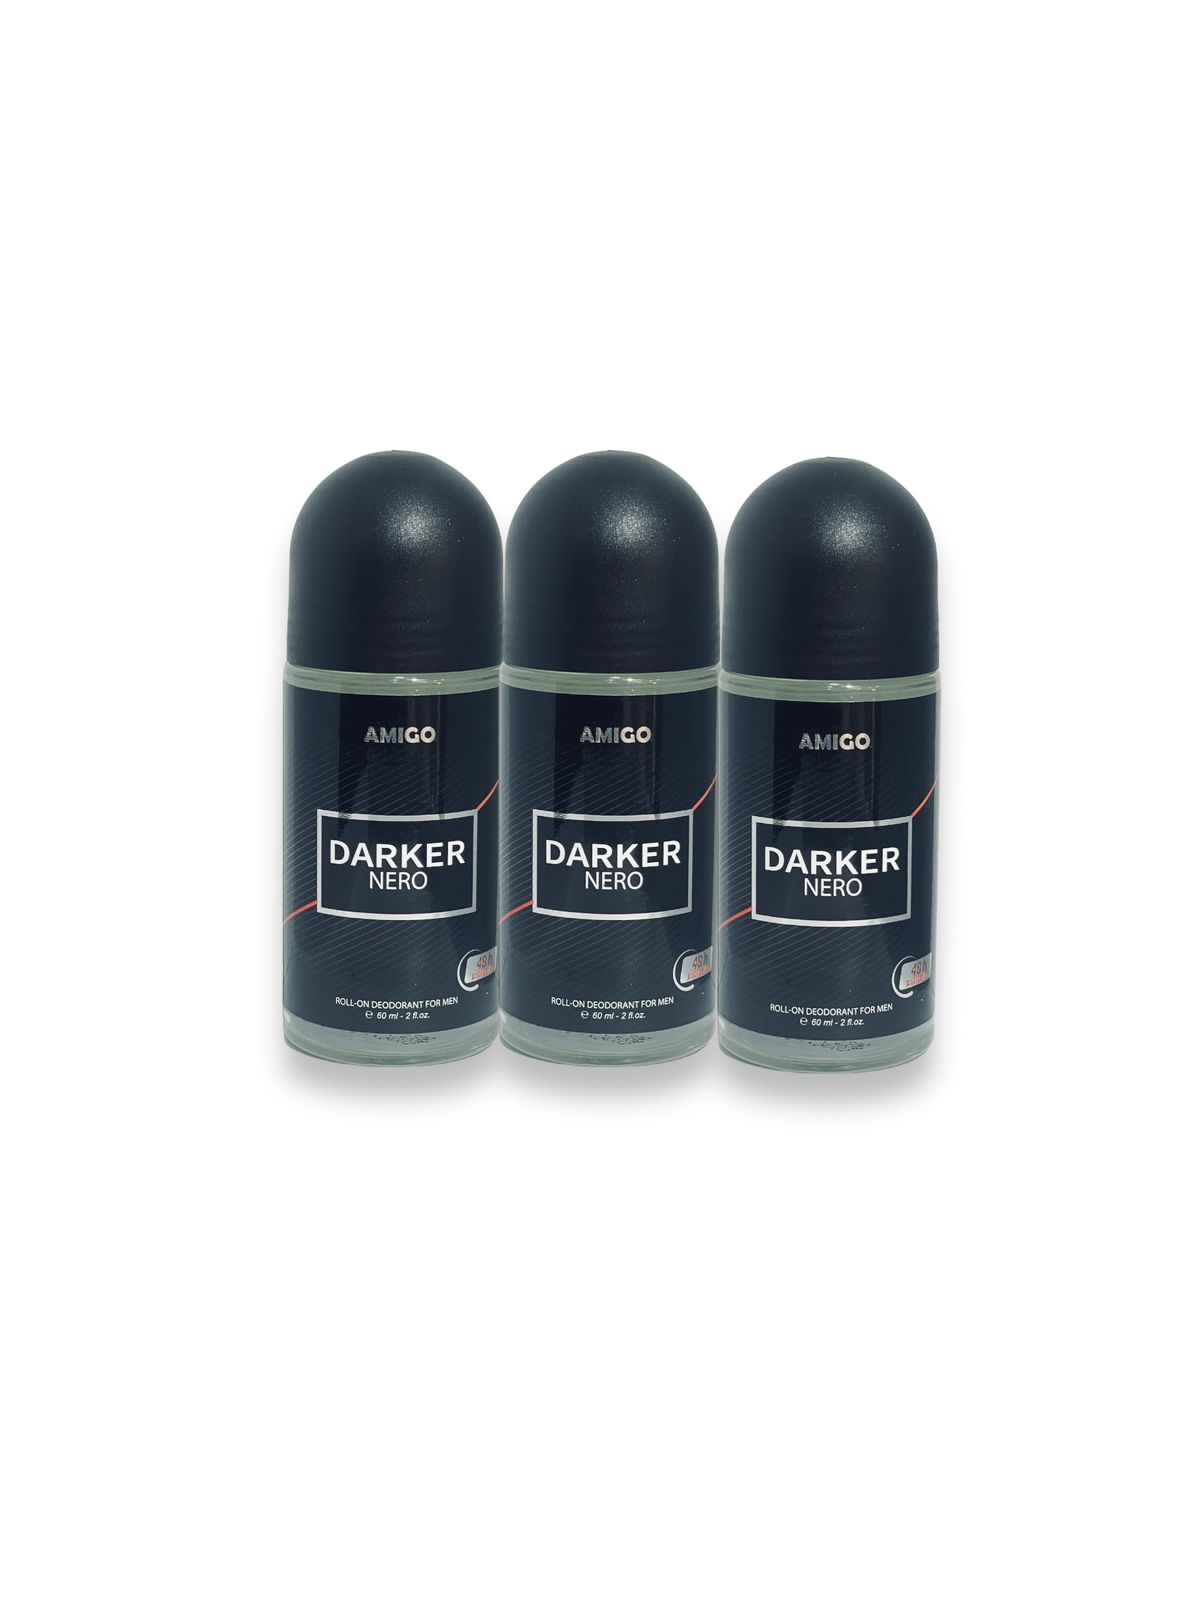 Amigo roll-on deodorant for men مزيل العرق اميجو رول اون للرجال